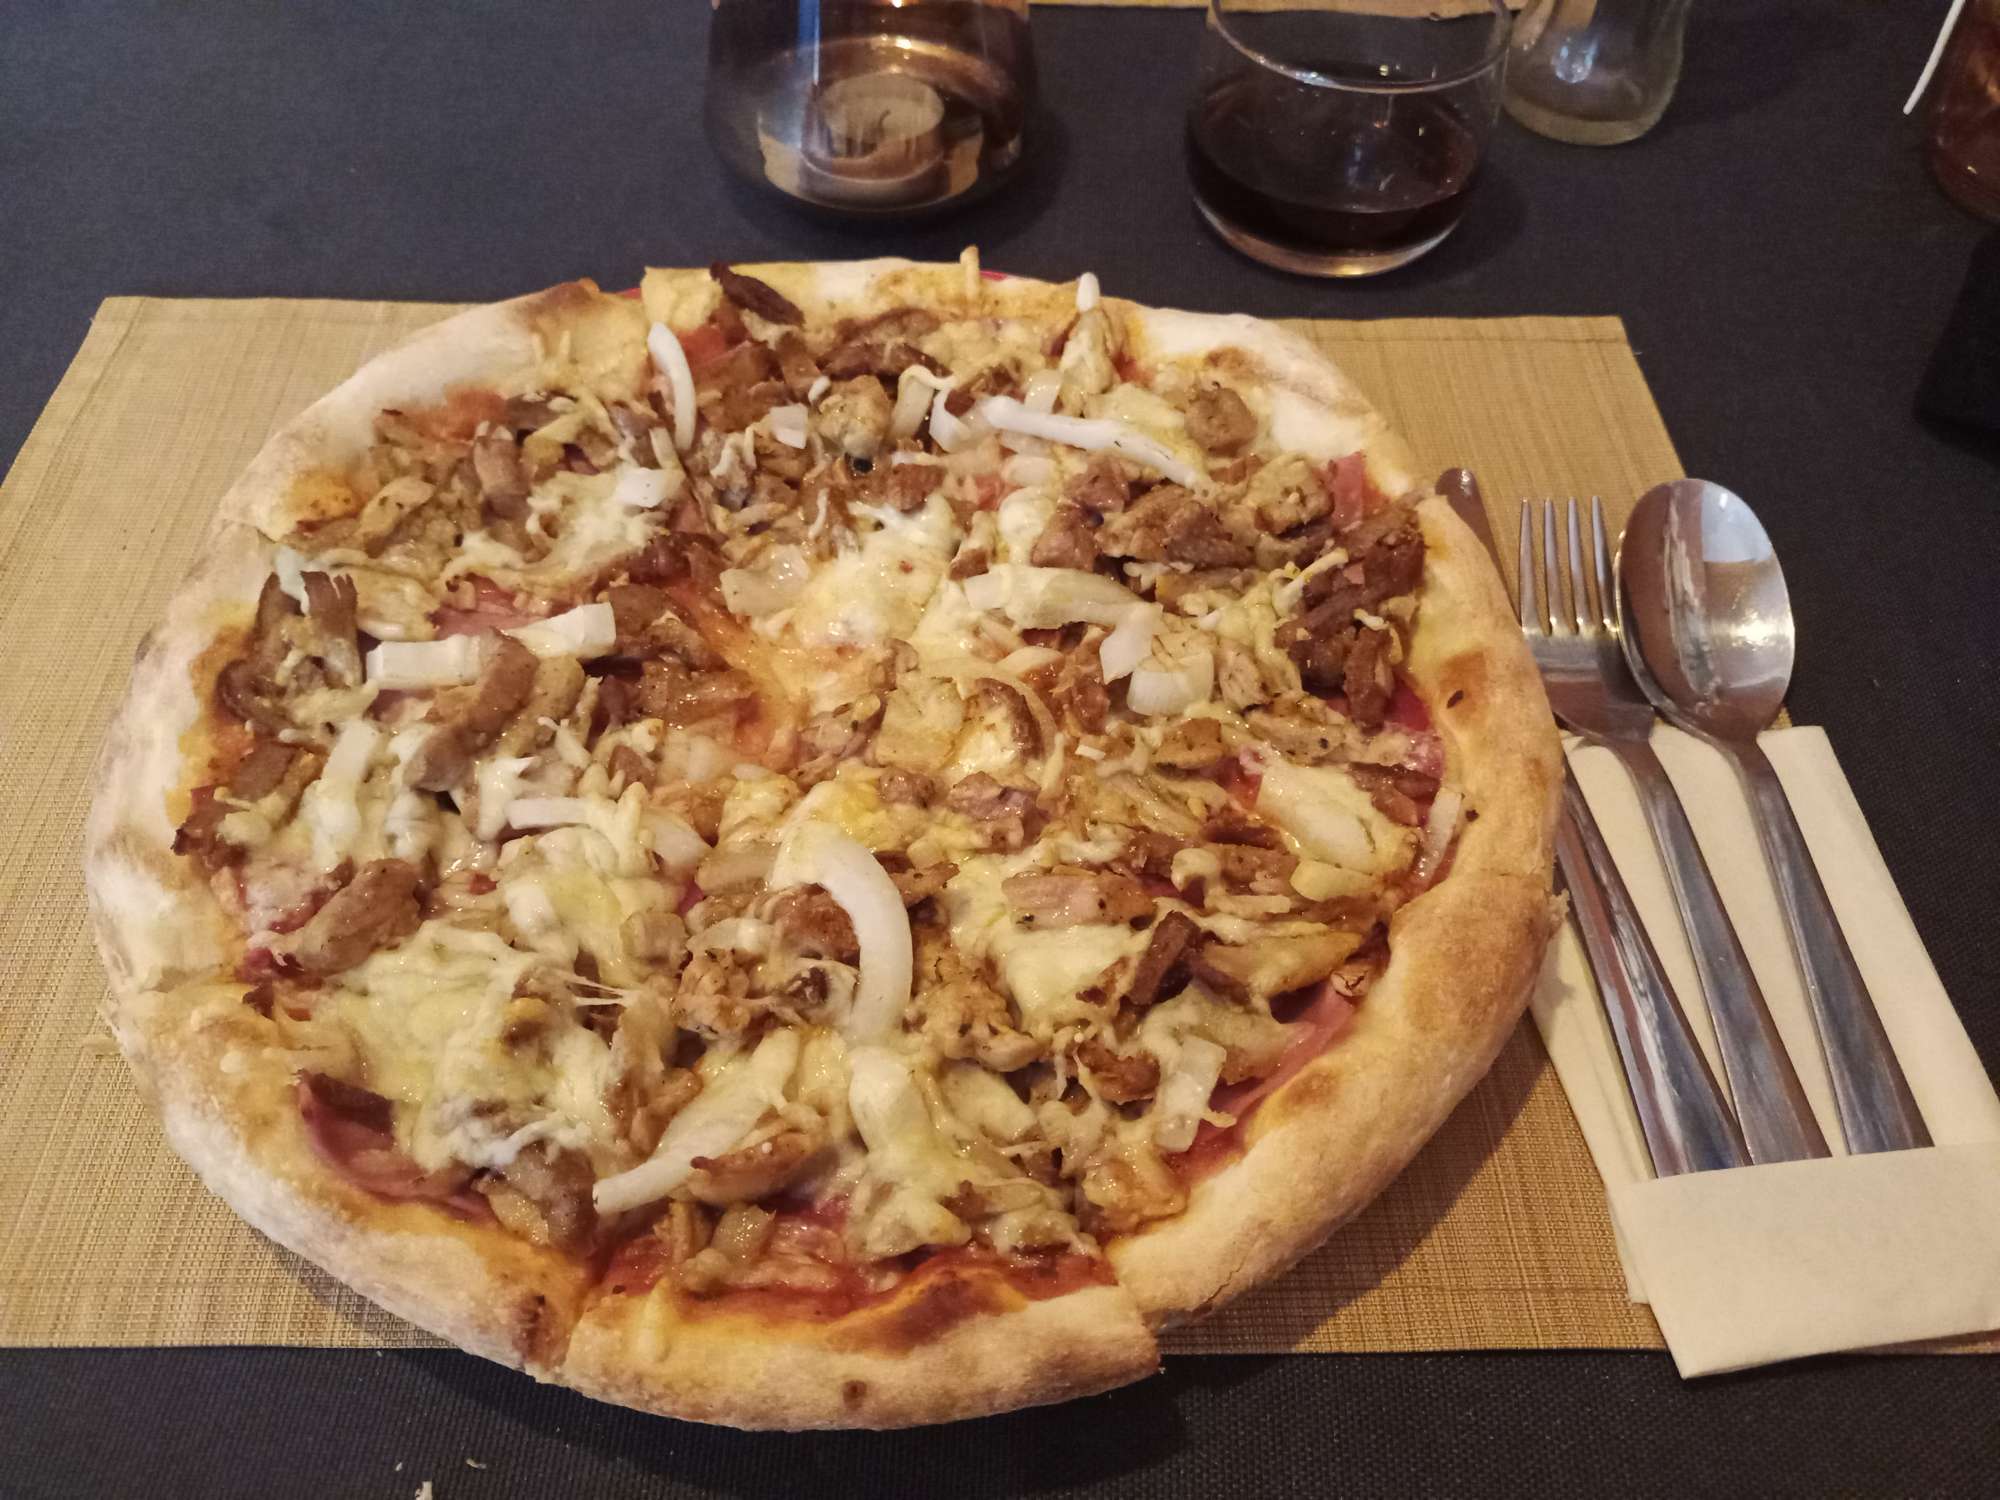 Op een bord ligt een pizza met diverse soorten vlees, uien en brie.